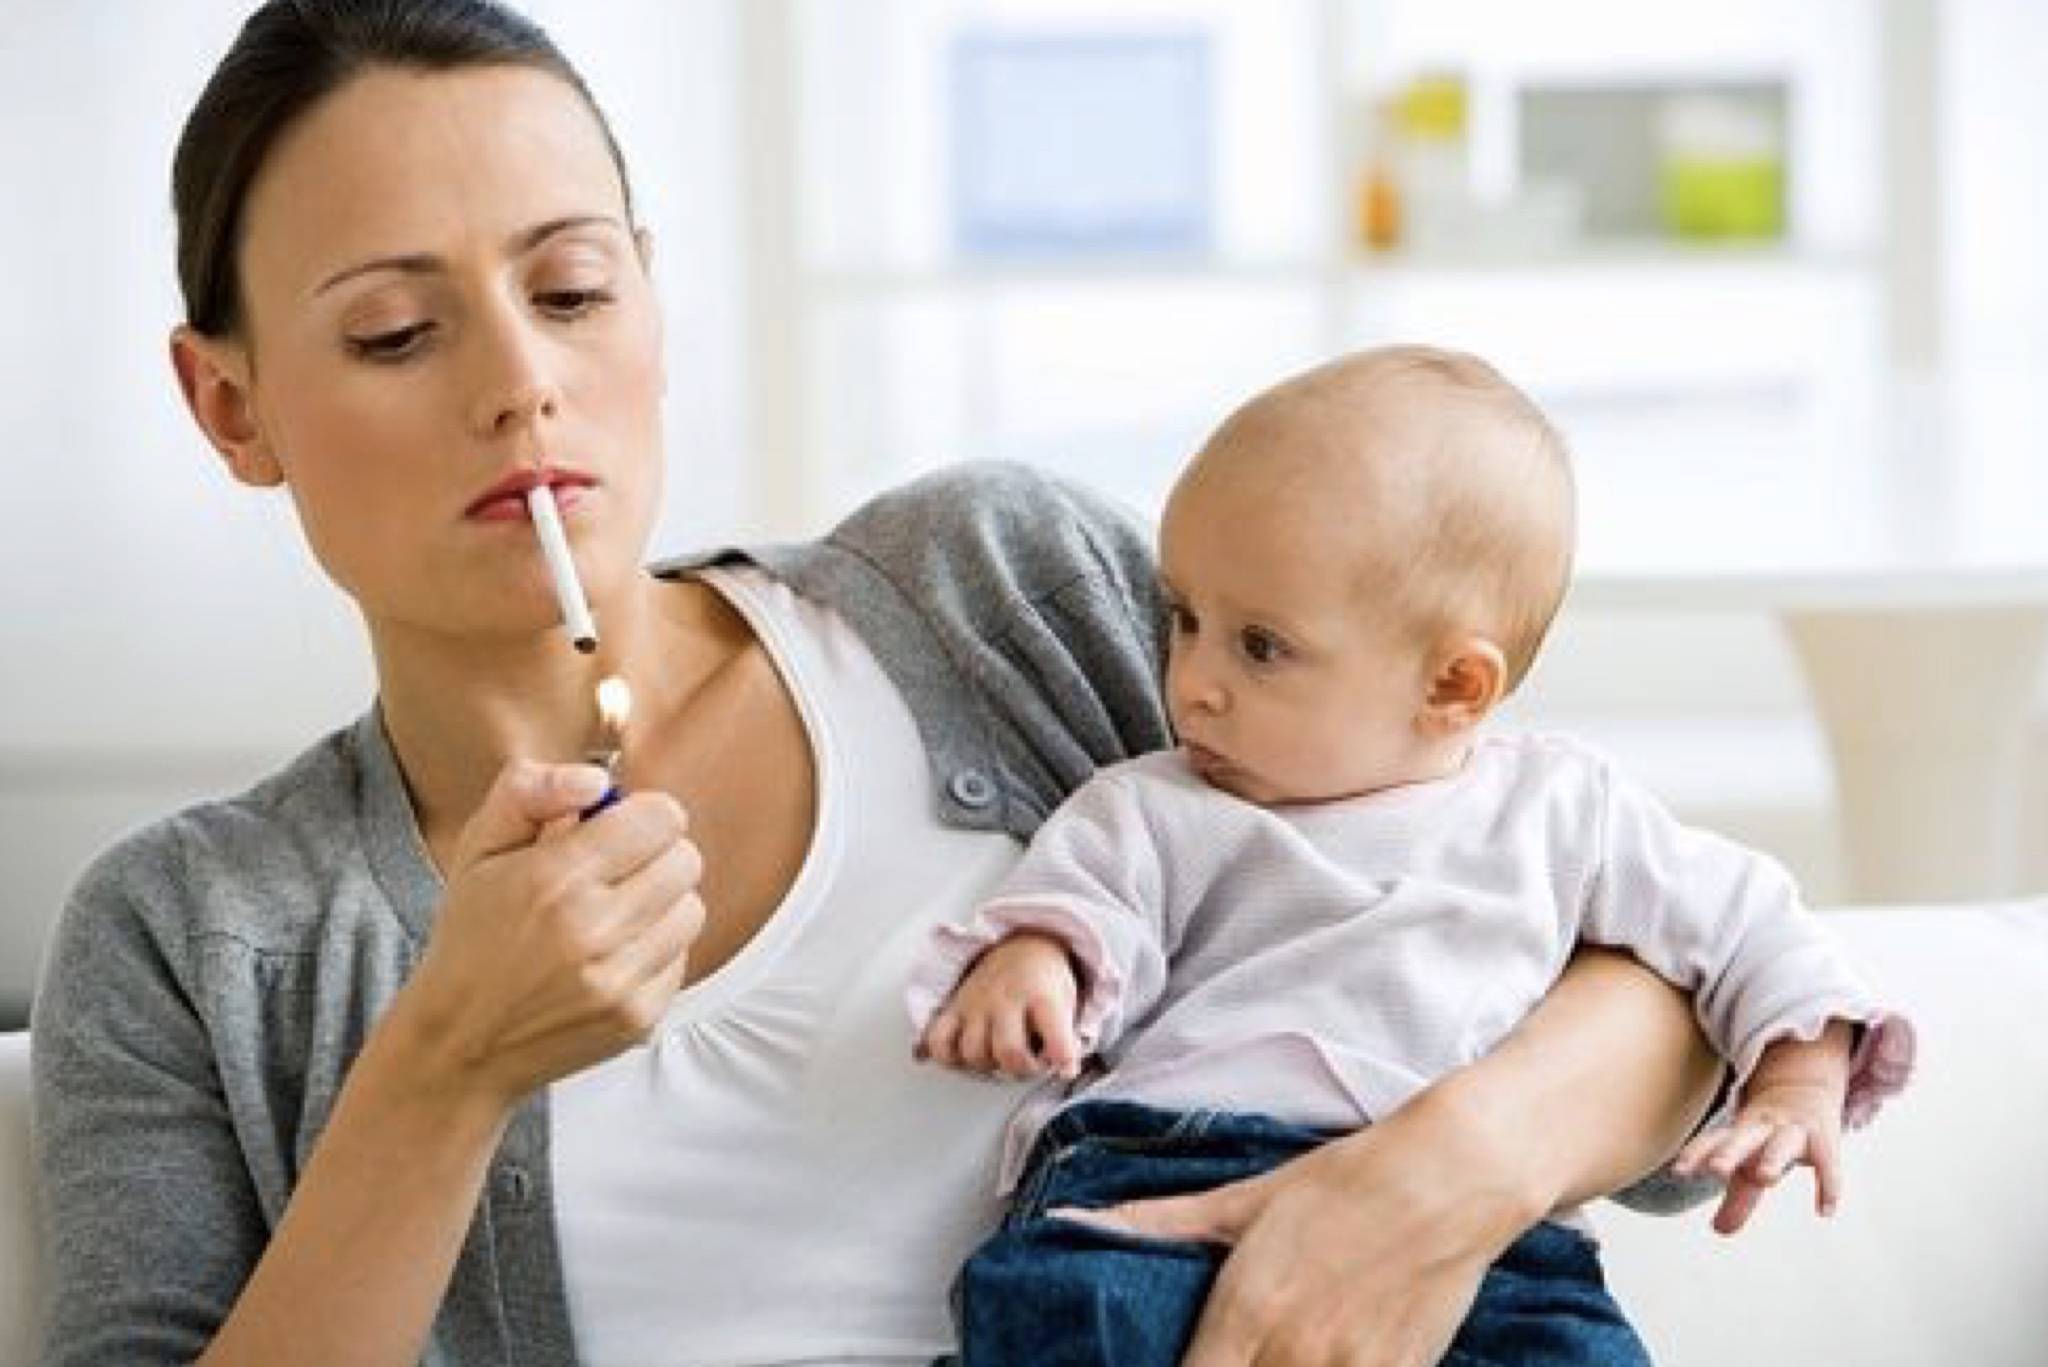 Вред курения для женщин: как курение влияет на внешний вид и возможность зачатия